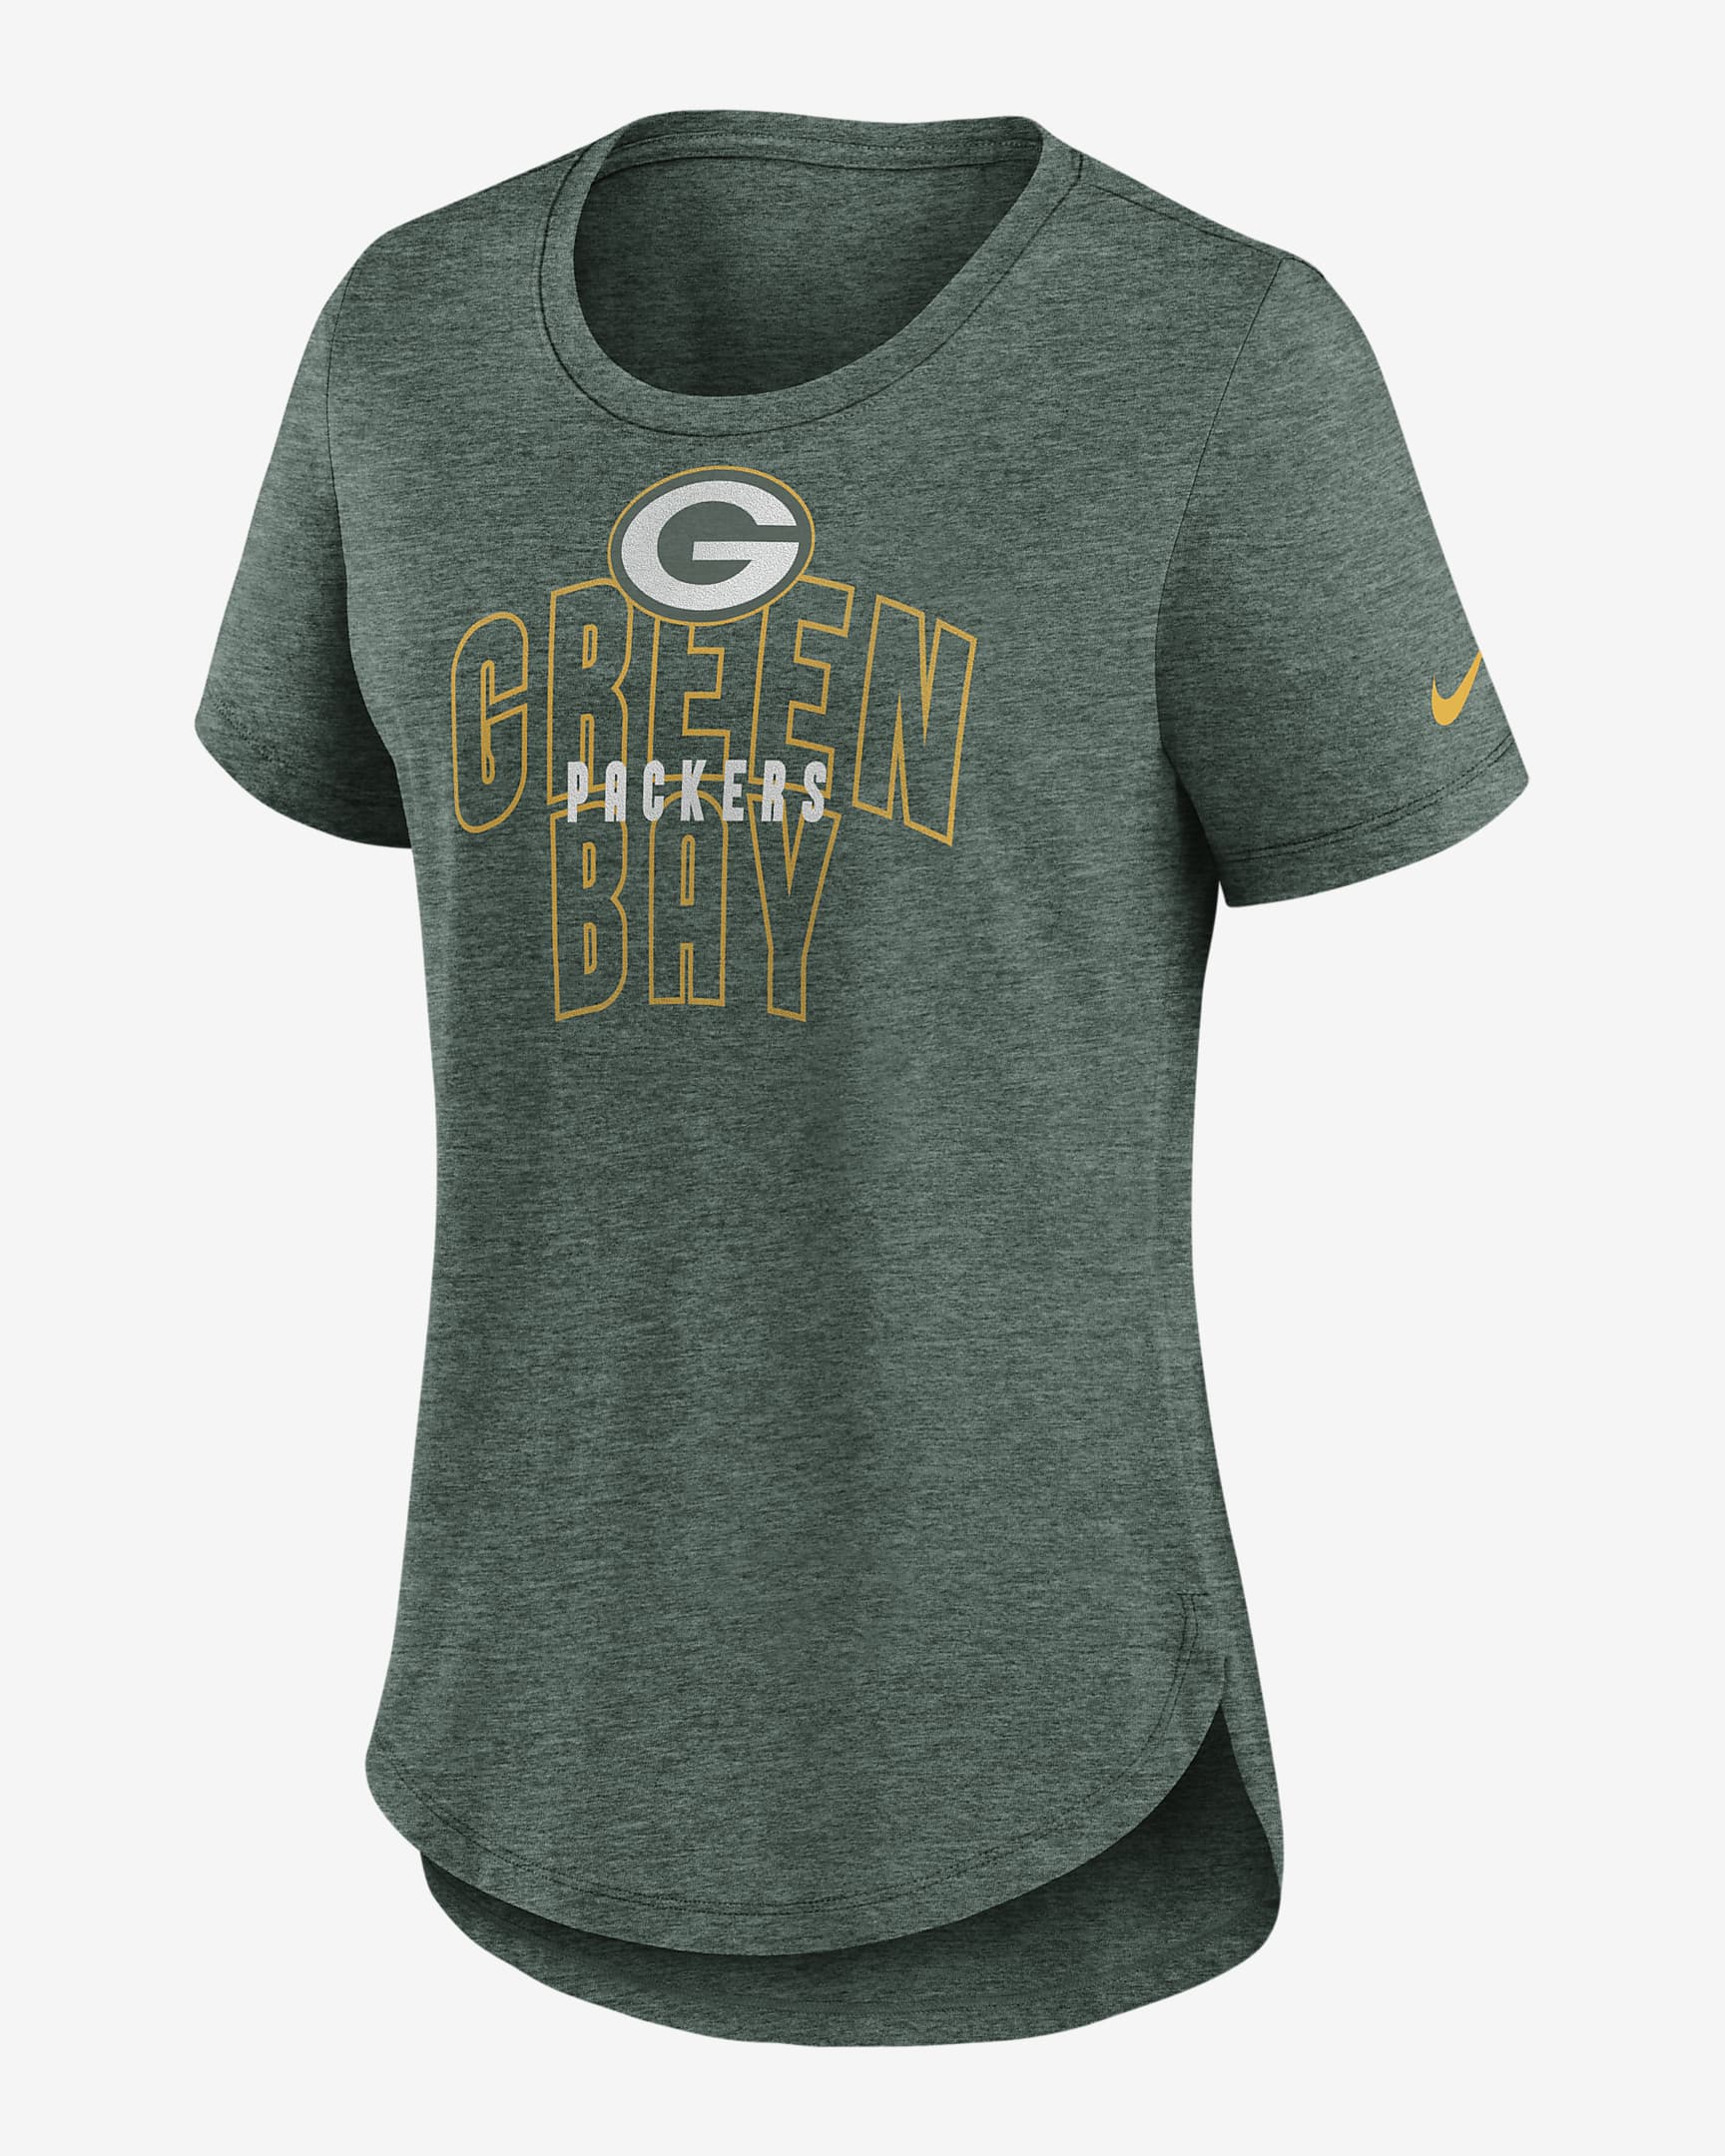 Nike Fashion Nfl Green Bay Packers Women S T Shirt